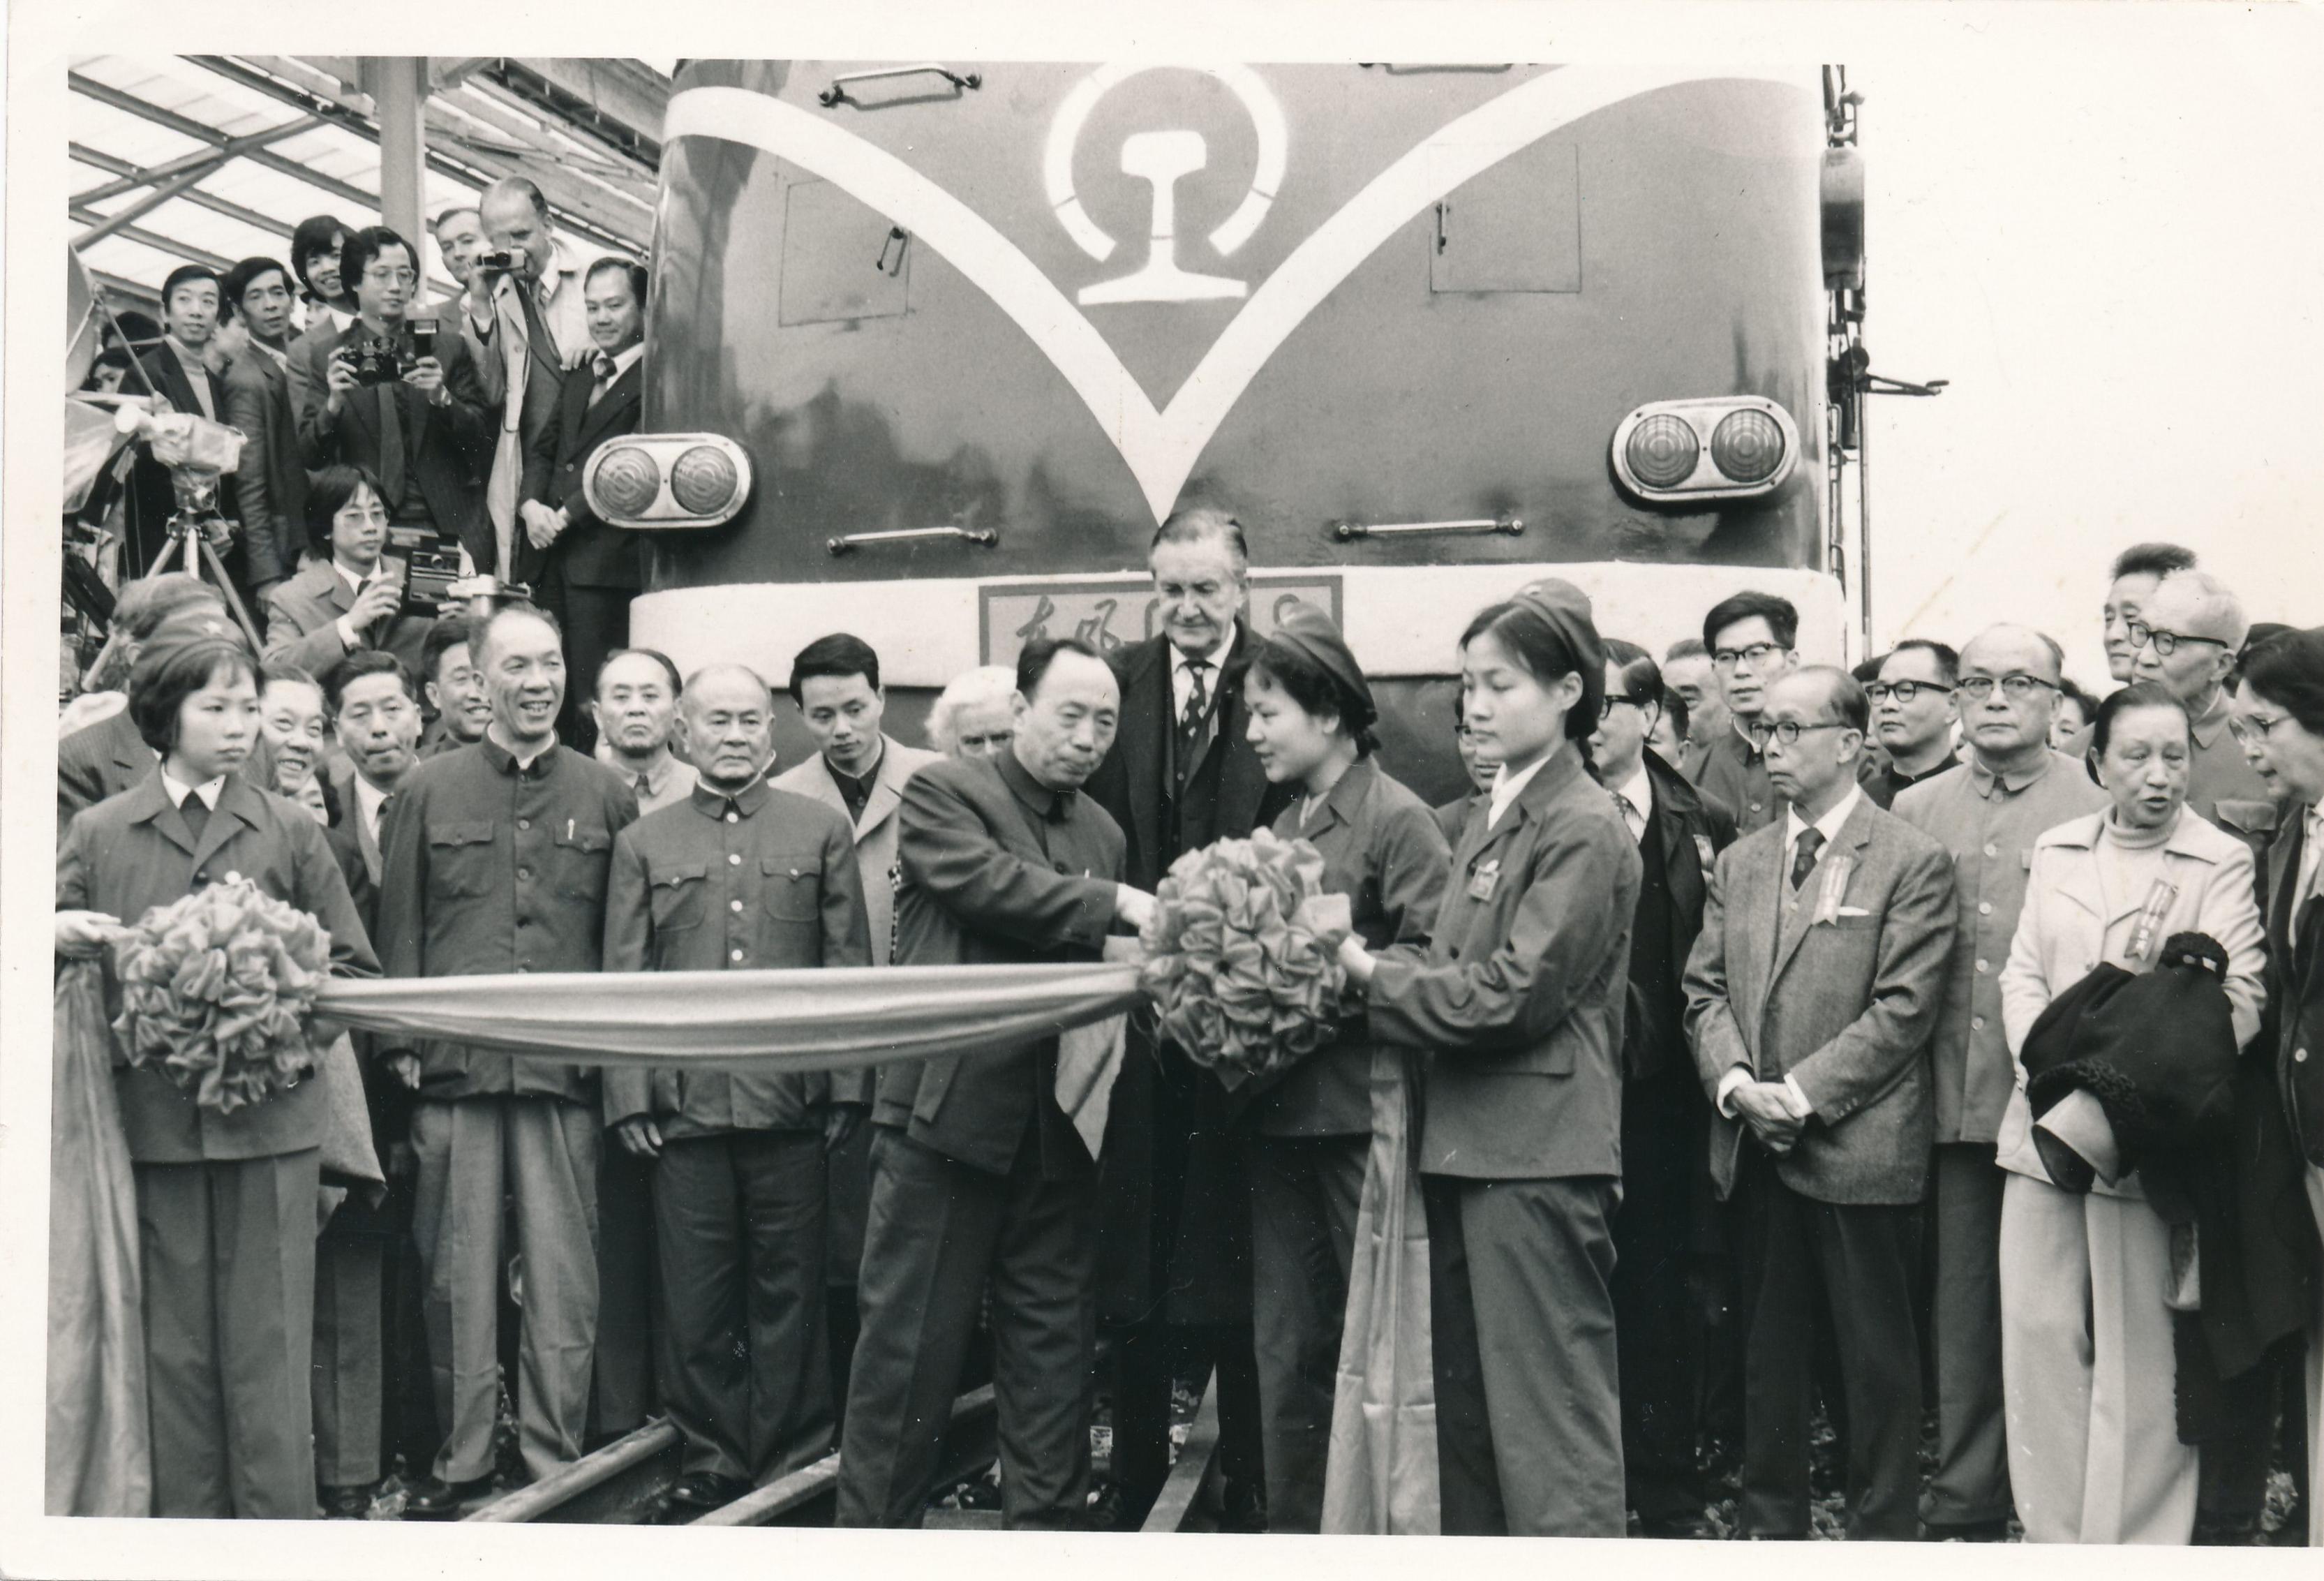 港穂直通火車服務中斷30年後，於1979年4月4日恢復通車。通車剪綵儀式在廣州舉行，由鐵路部副局長耿振林主禮，港督麥理浩亦有出席。（圖片來源：星島新聞集團）